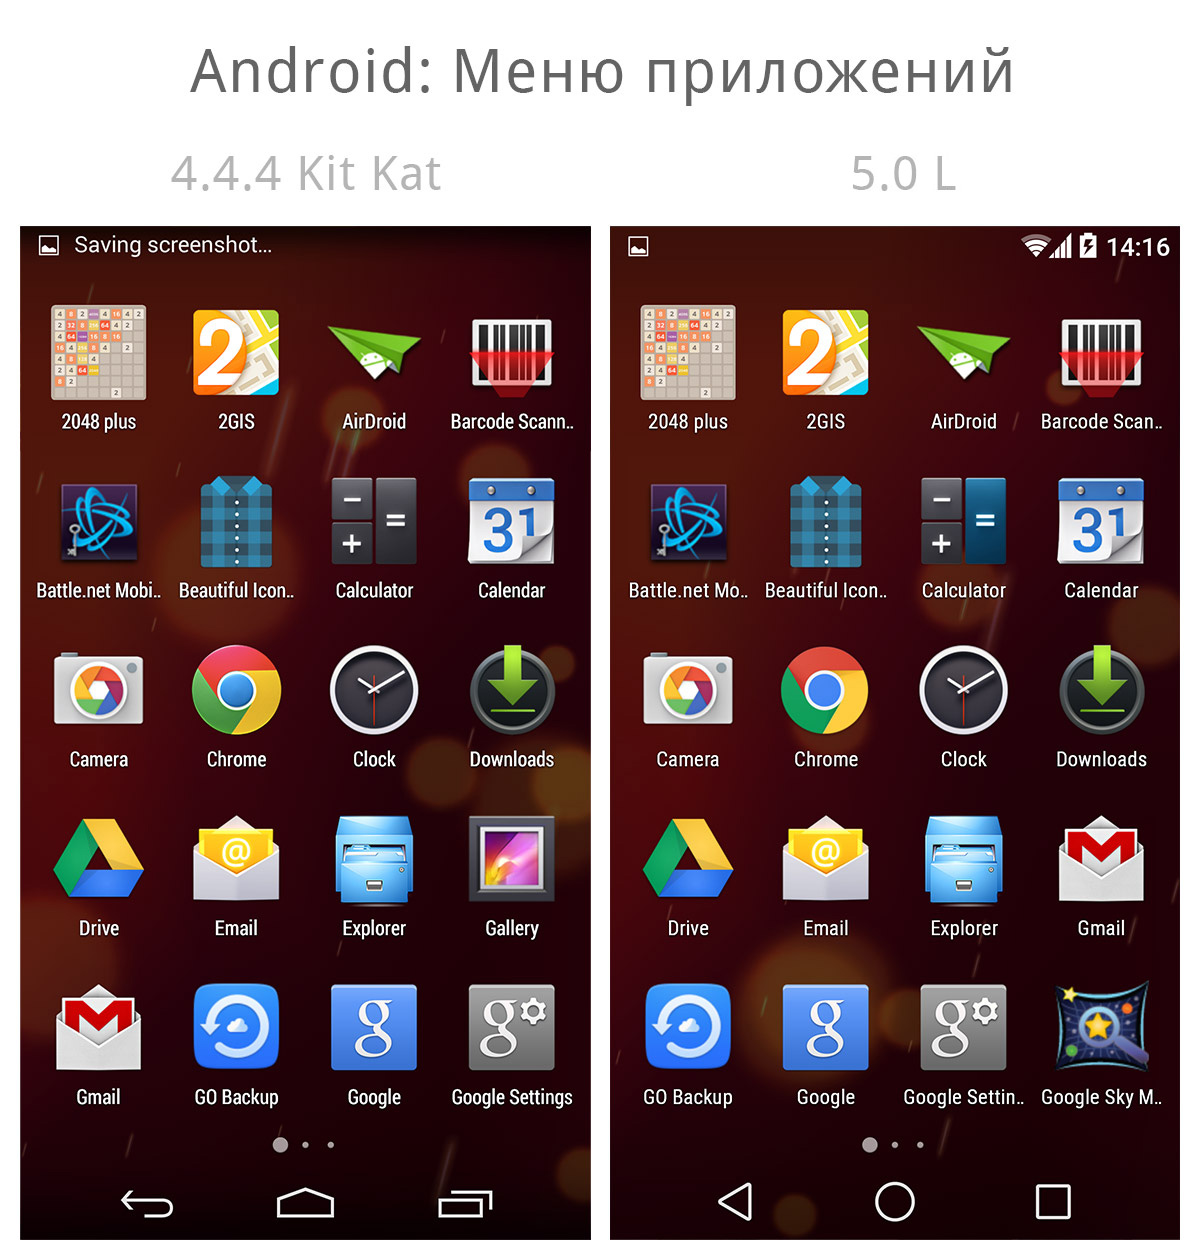 Android 4.4 приложения. Меню в приложении на смартфоне. Андроид. Программы для андроид. Программы для телефона андроид.